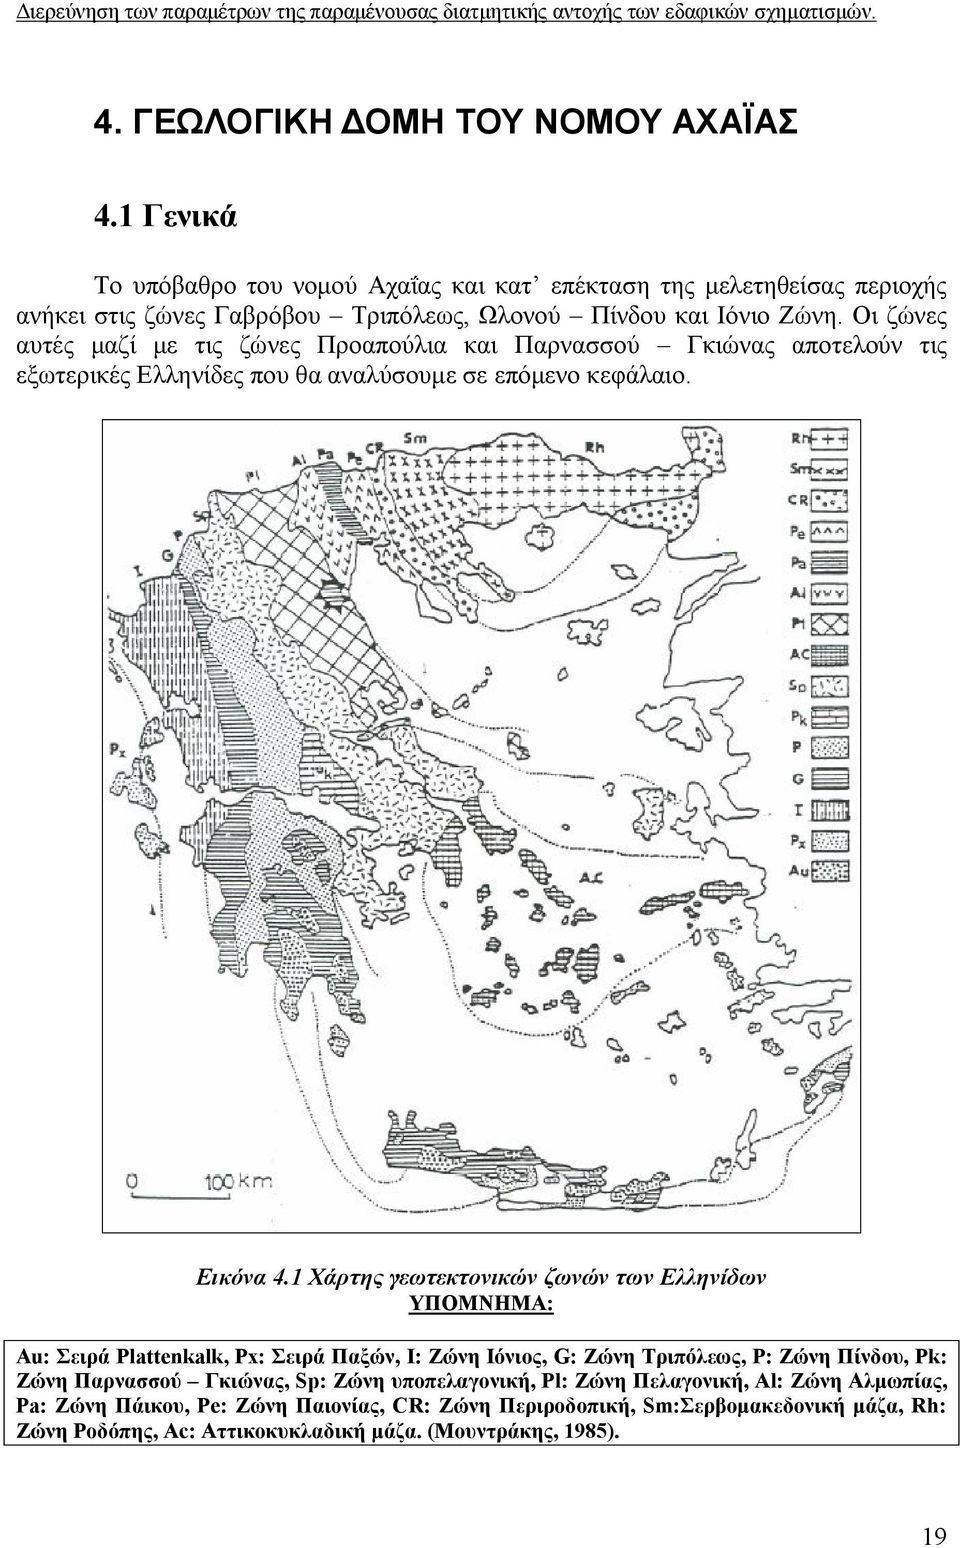 Οι ζώνες αυτές μαζί με τις ζώνες Προαπούλια και Παρνασσού Γκιώνας αποτελούν τις εξωτερικές Ελληνίδες που θα αναλύσουμε σε επόμενο κεφάλαιο. Εικόνα 4.